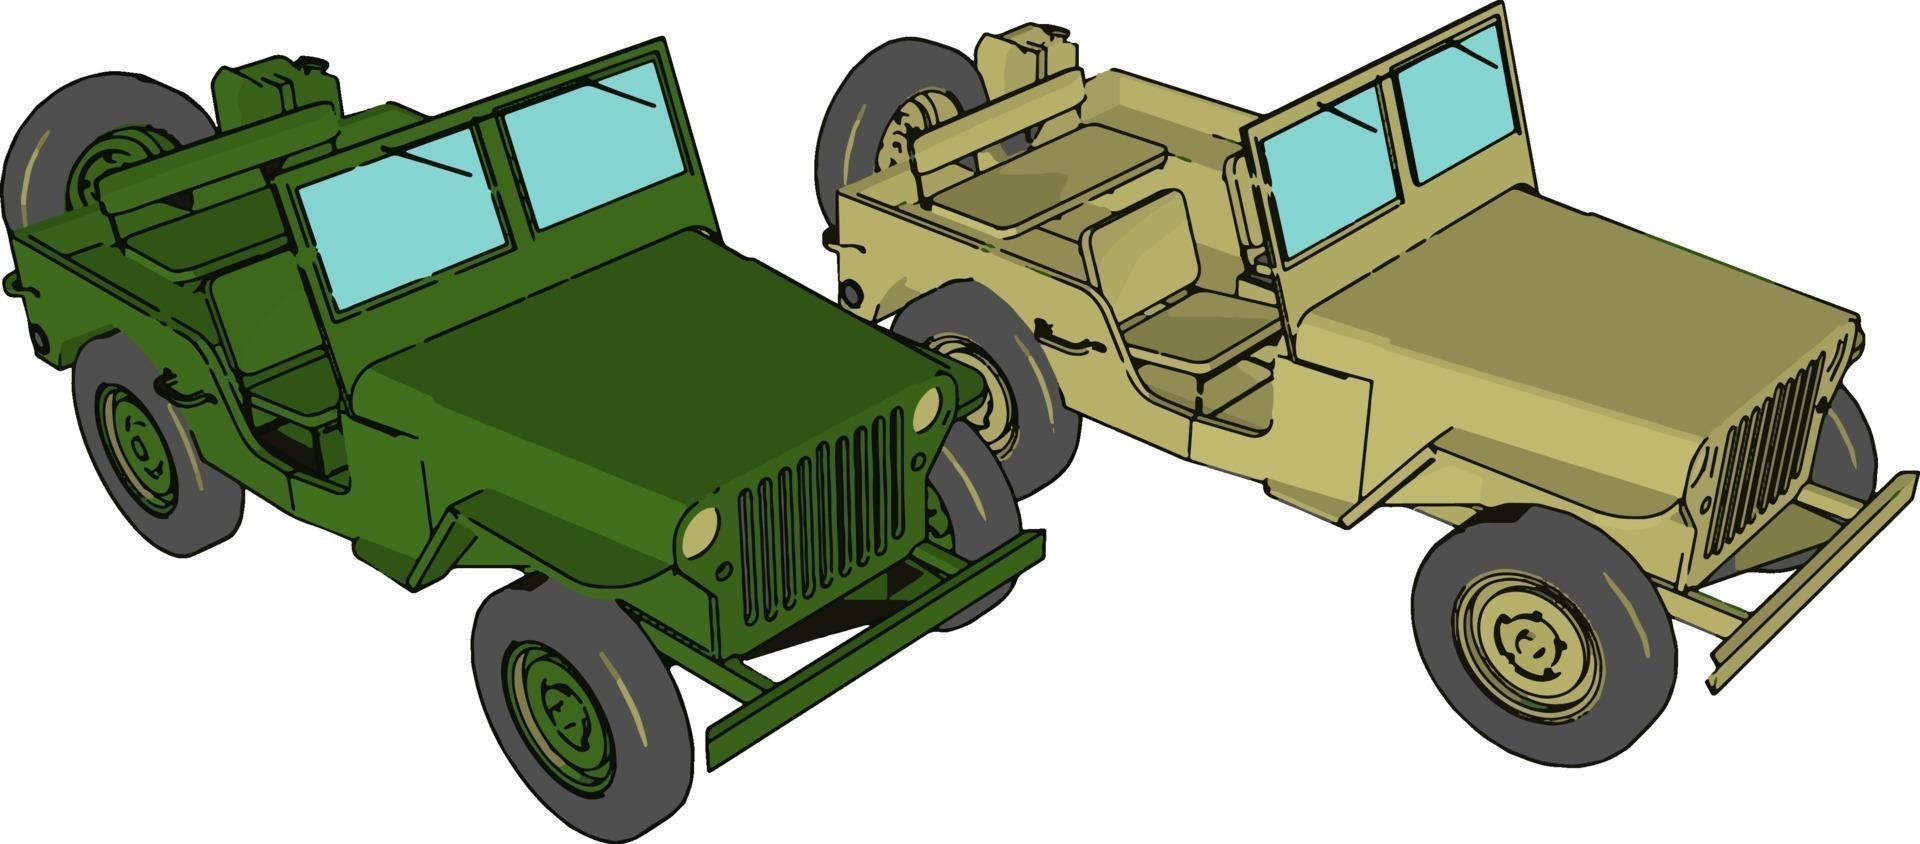 Jeep militar verde, ilustración, vector sobre fondo blanco.